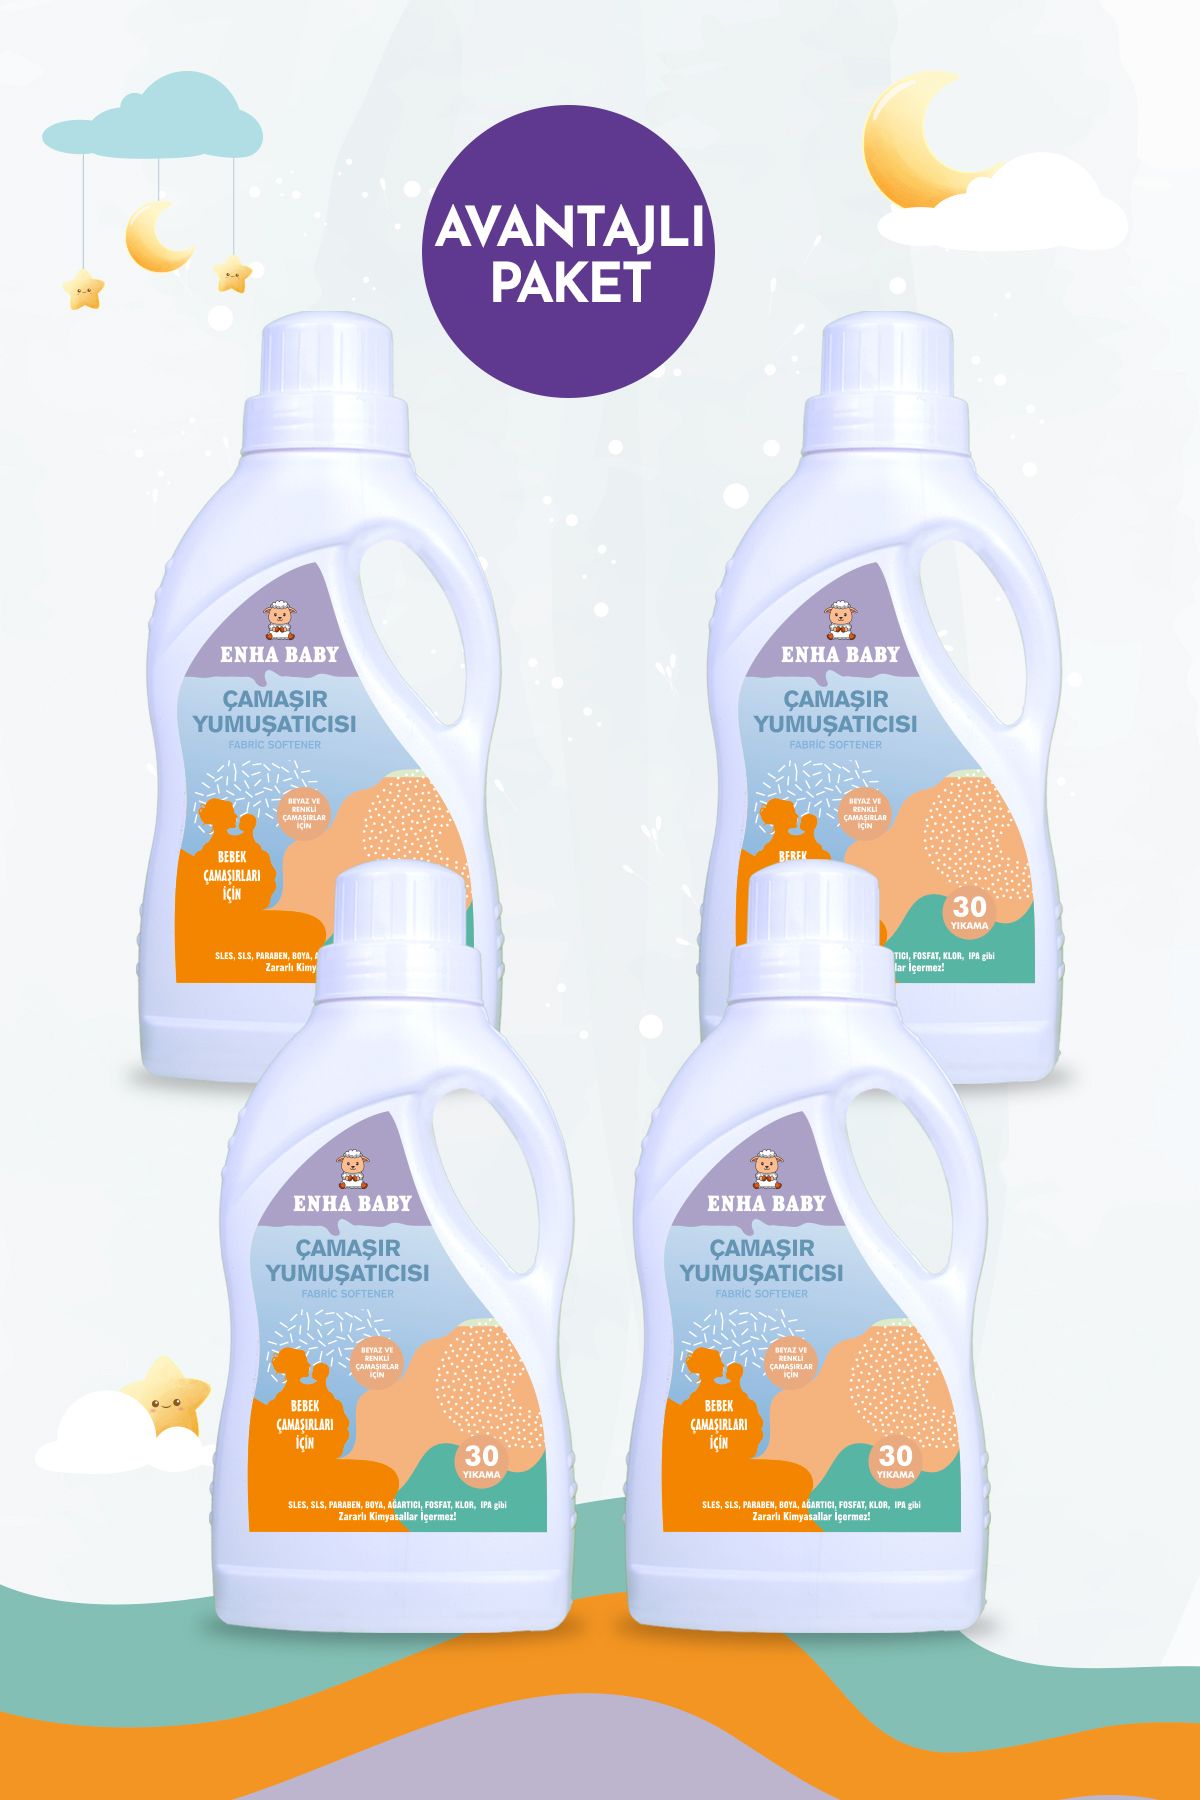 ENHA BABY Zararlı Kimyasallar İçermeyen Bebek Çamaşır Yumuşatıcısı -Bebek Kokusu-4'lü Avantajlı Paket